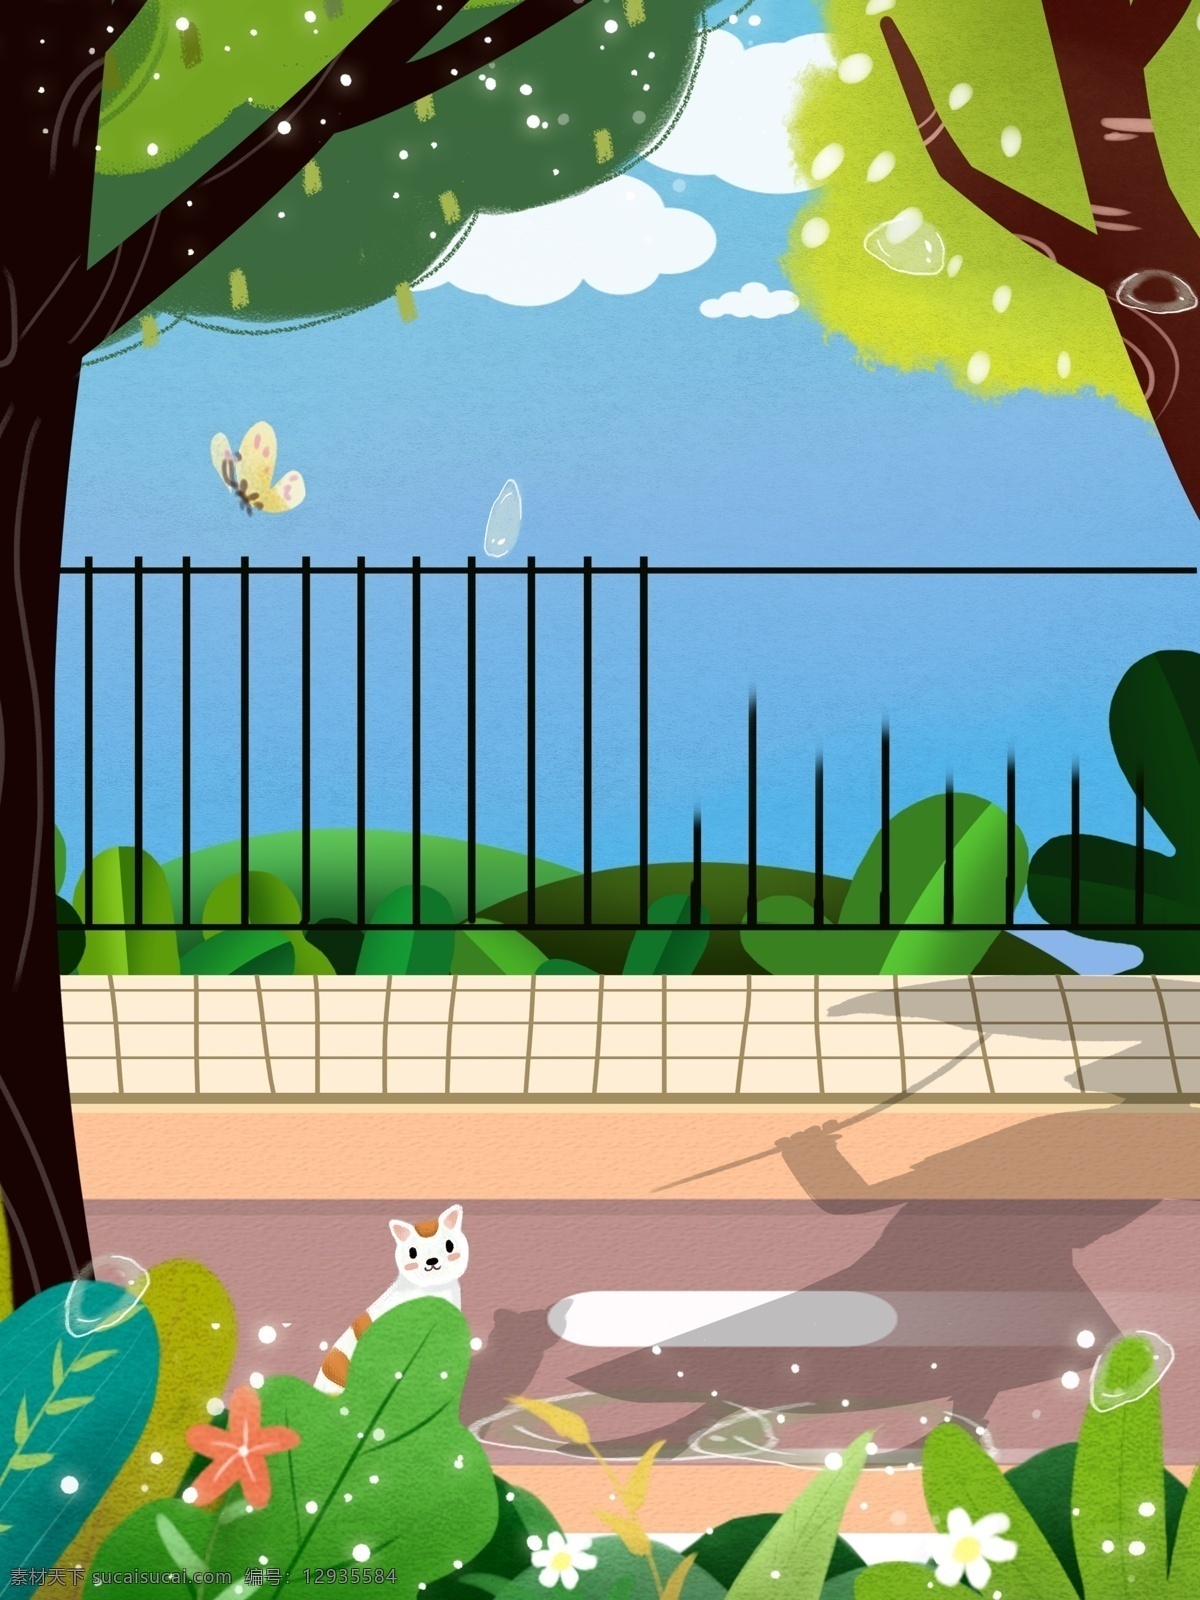 小 清新 公园 风景 插画 背景 植物 树木 道路 卡通 彩色 创意 装饰 设计背景 海报背景 简约 图案